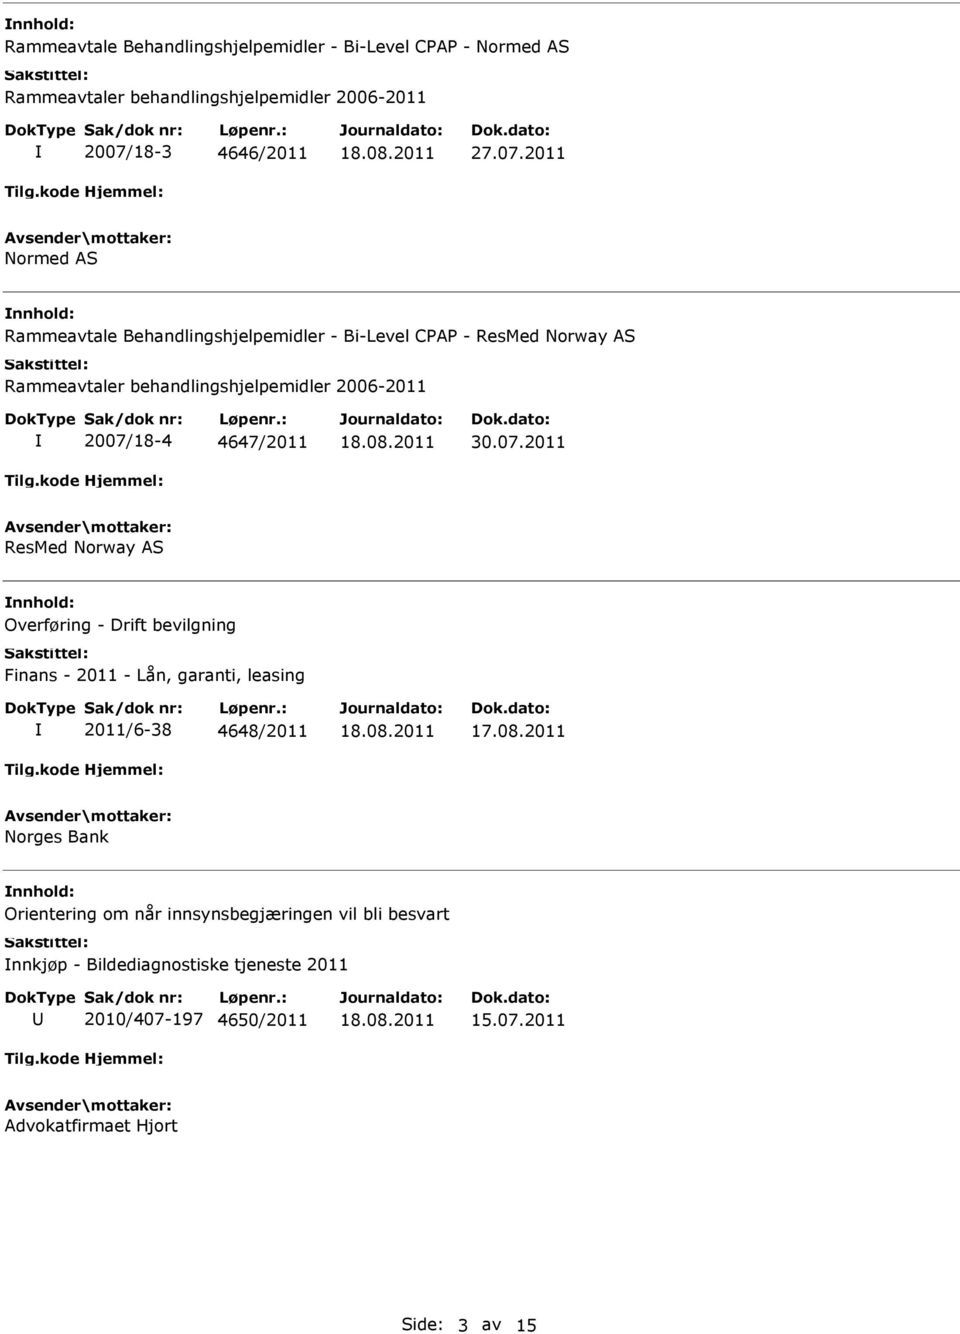 2011 Normed AS Rammeavtale Behandlingshjelpemidler - Bi-Level CPAP - ResMed Norway AS Rammeavtaler behandlingshjelpemidler 2006-2011 2007/18-4